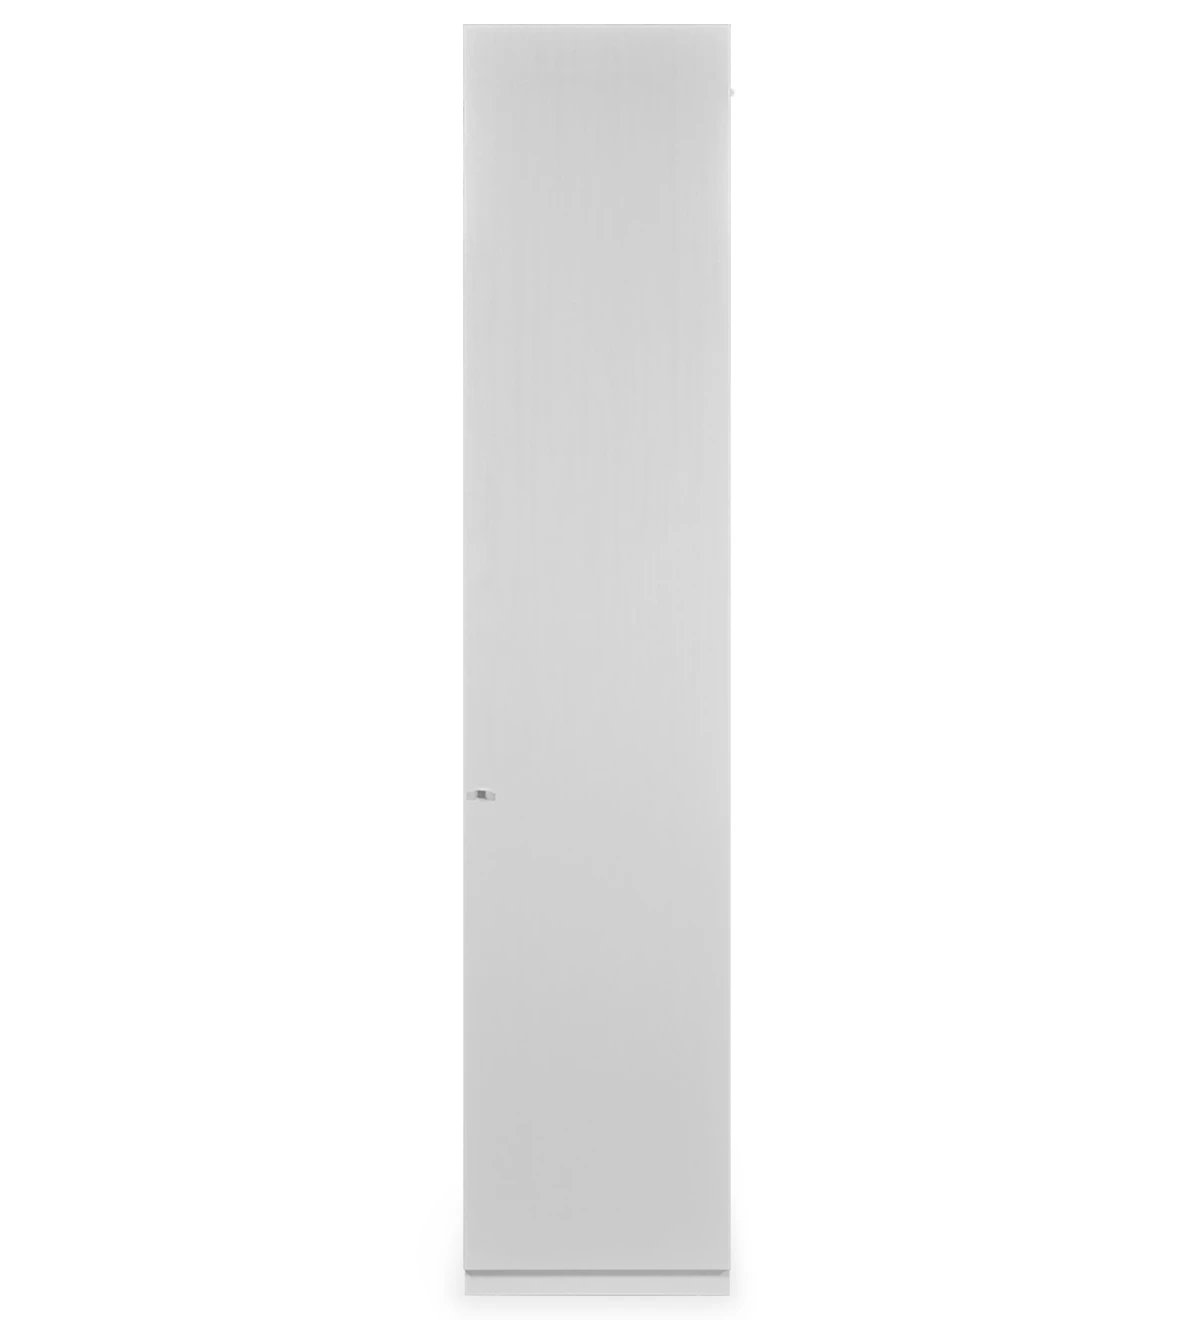 Móvel estante alto em carvalho branco, com 1 porta e prateleiras amovíveis.